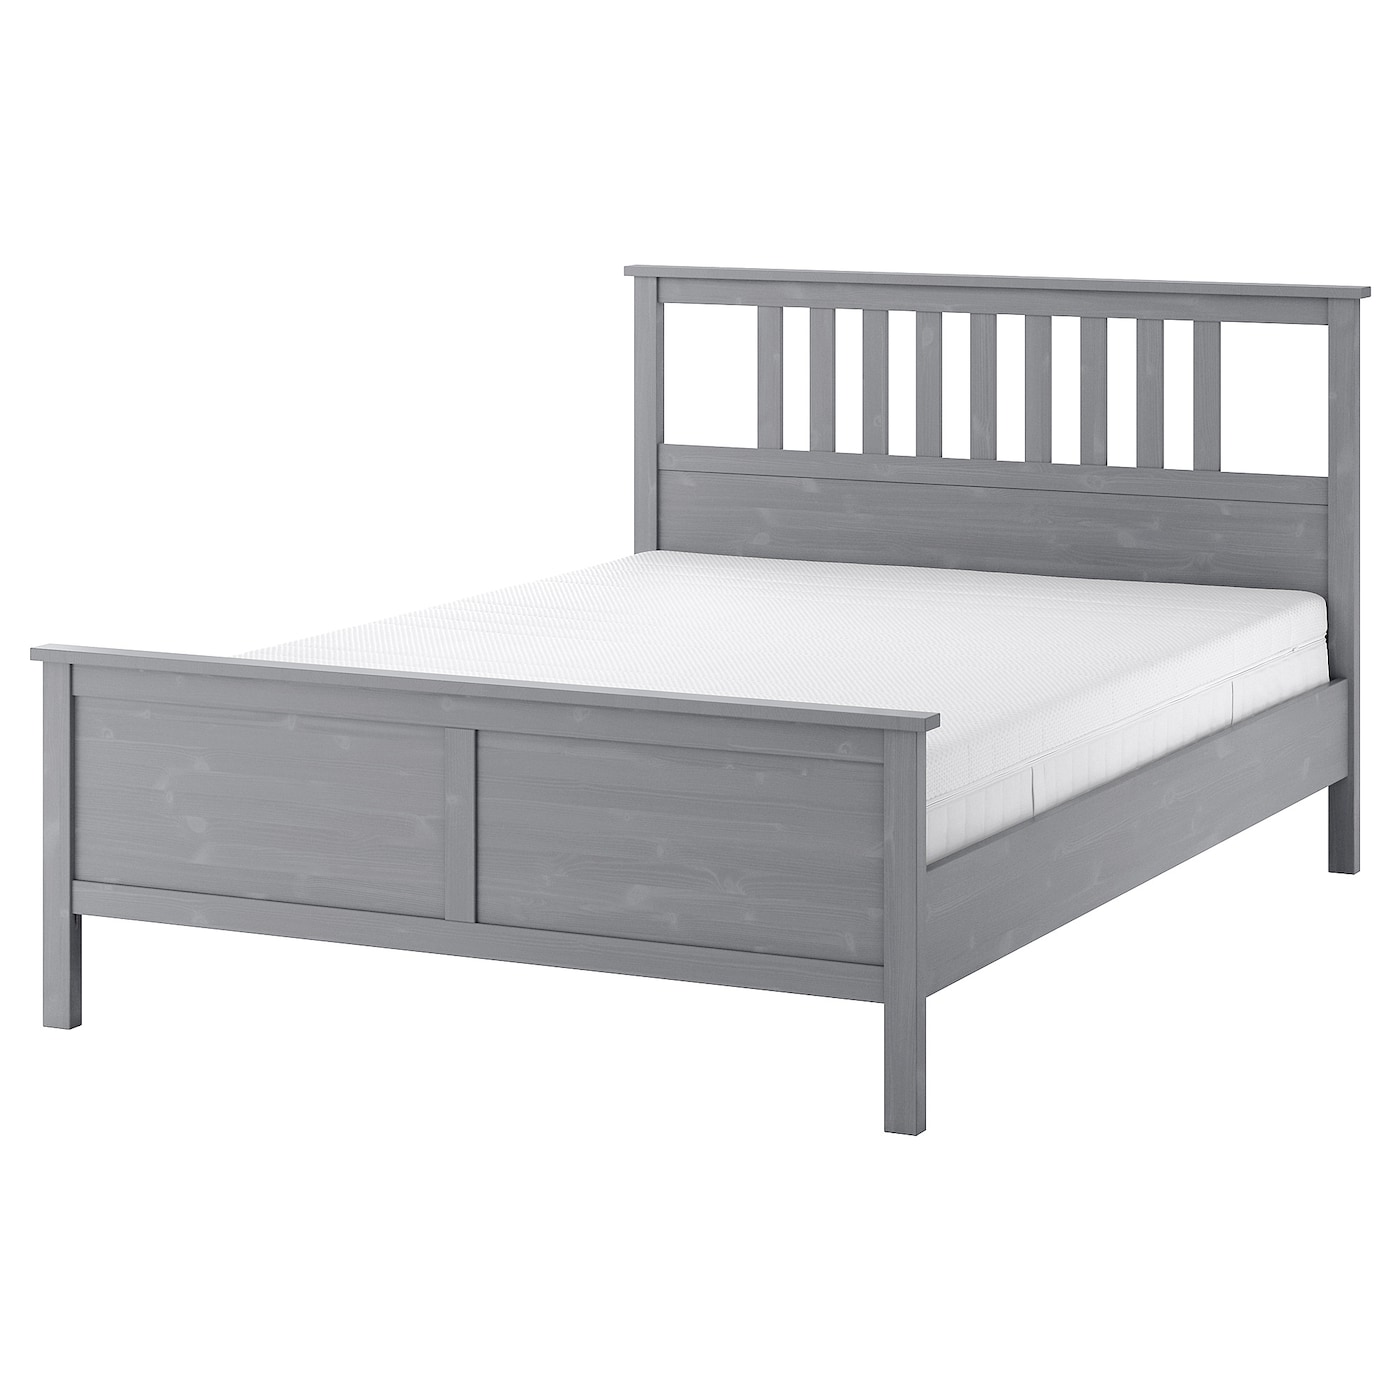 Кровать - IKEA HEMNES, 200х160 см, матрас средней жесткости, серый, ХЕМНЕС ИКЕА